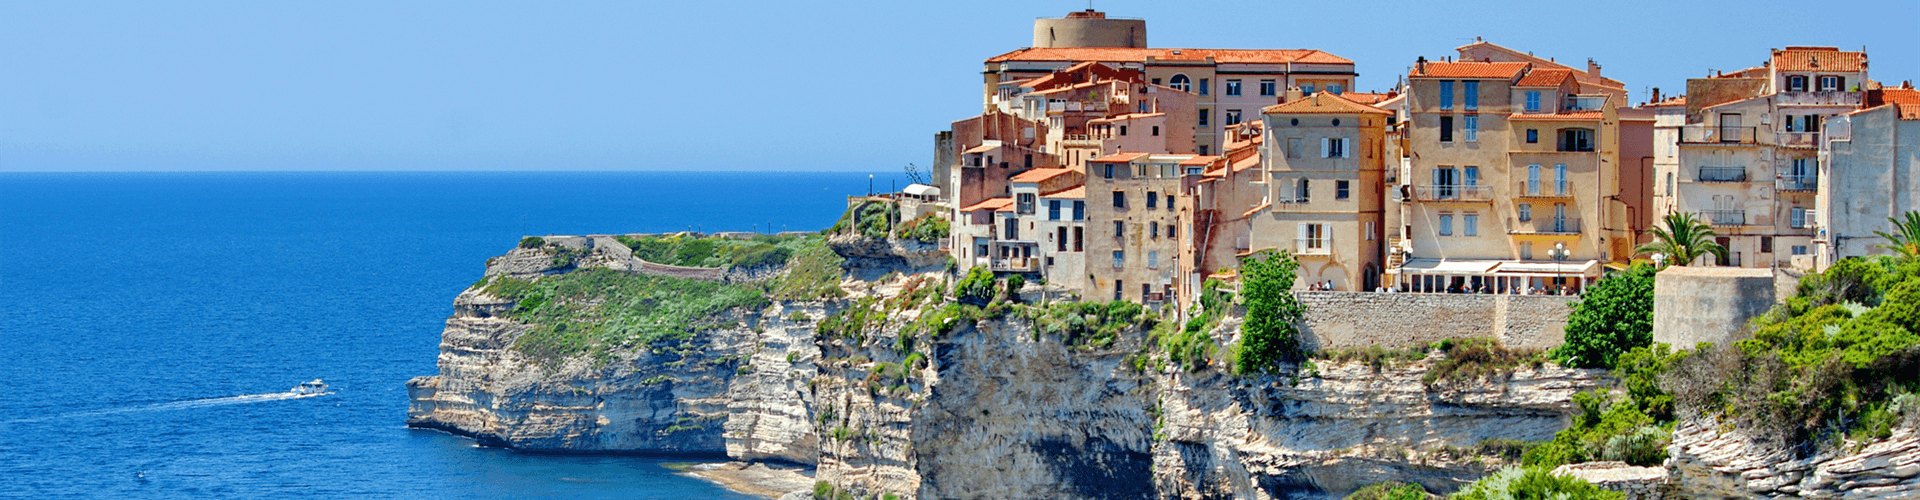 Bezienswaardigheden op Corsica: vestingstad Bonifacio